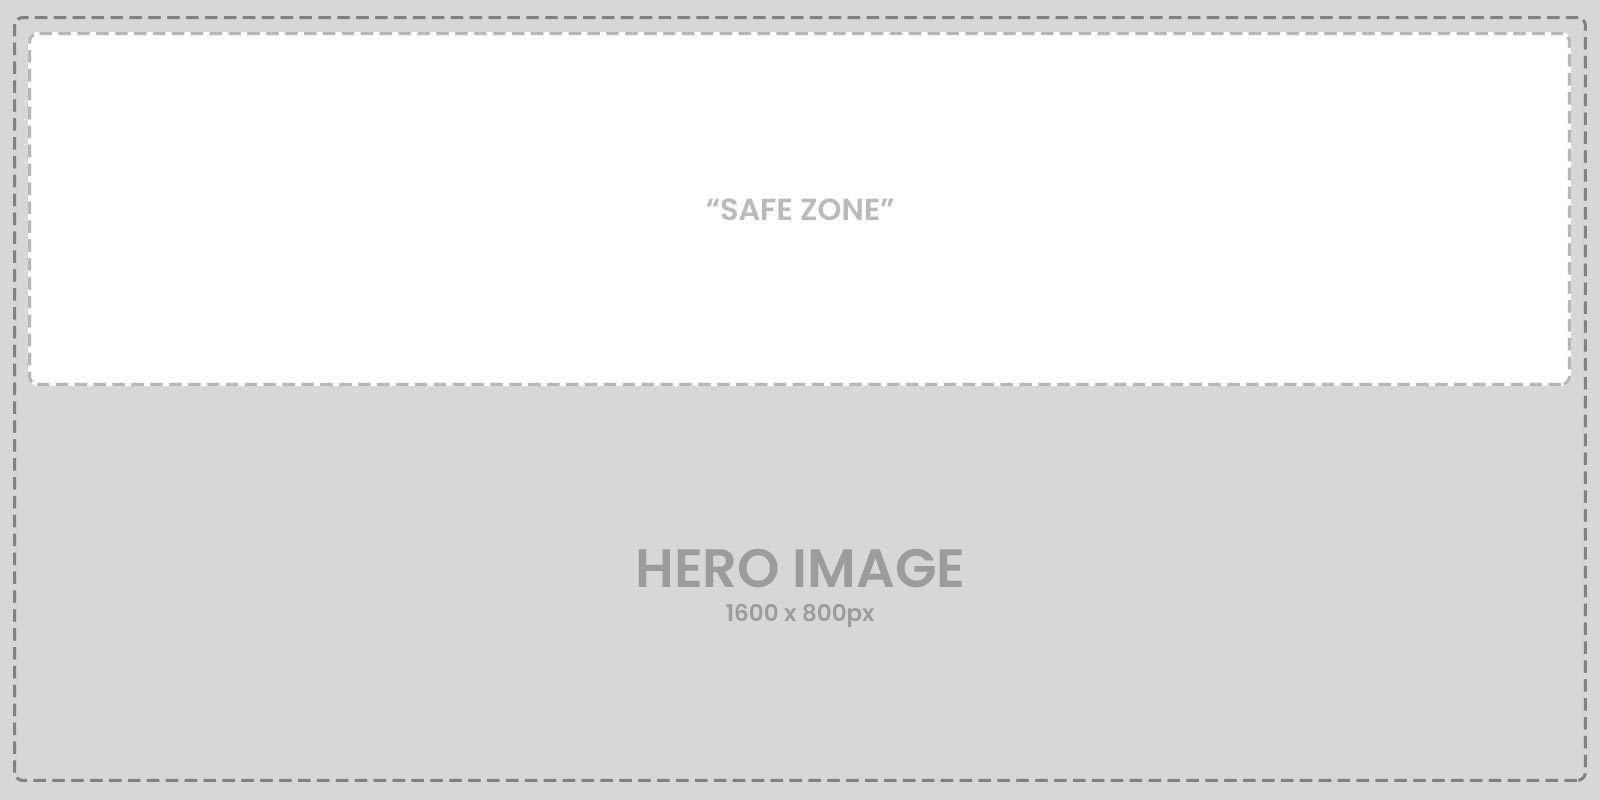 Example hero image - 1600x800 pixels